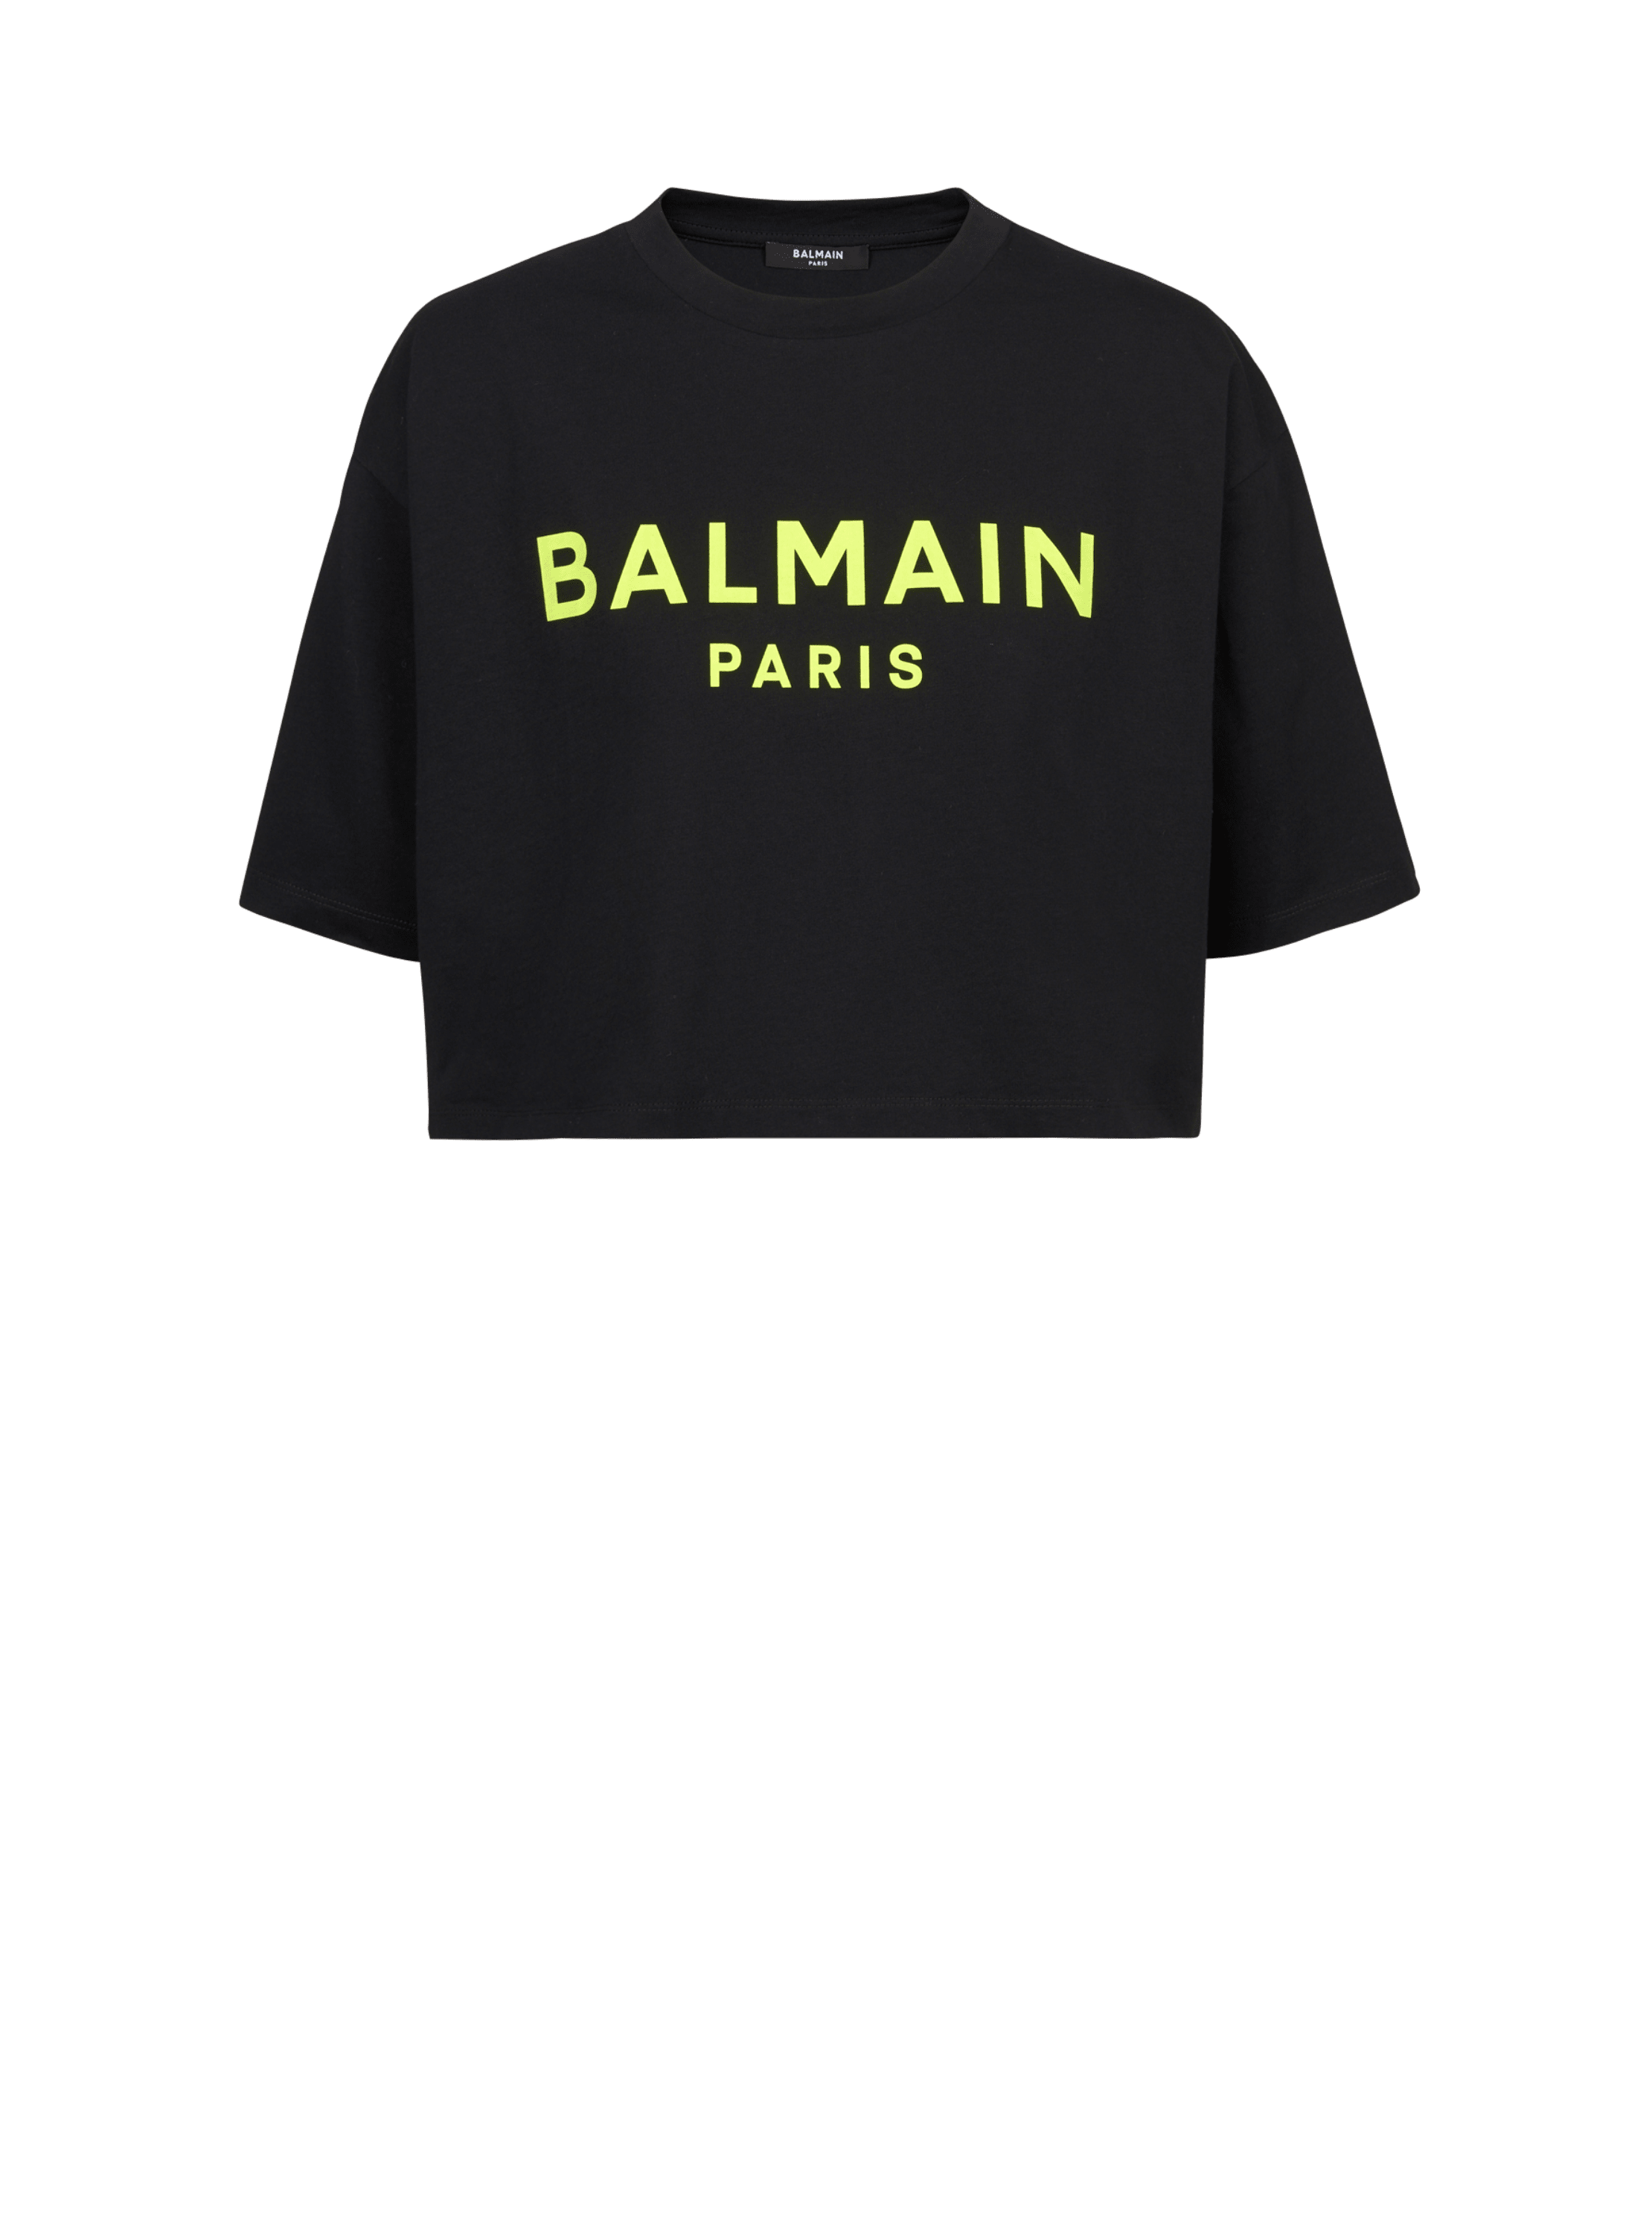 T-shirt corta in cotone con logo Balmain, giallo, hi-res